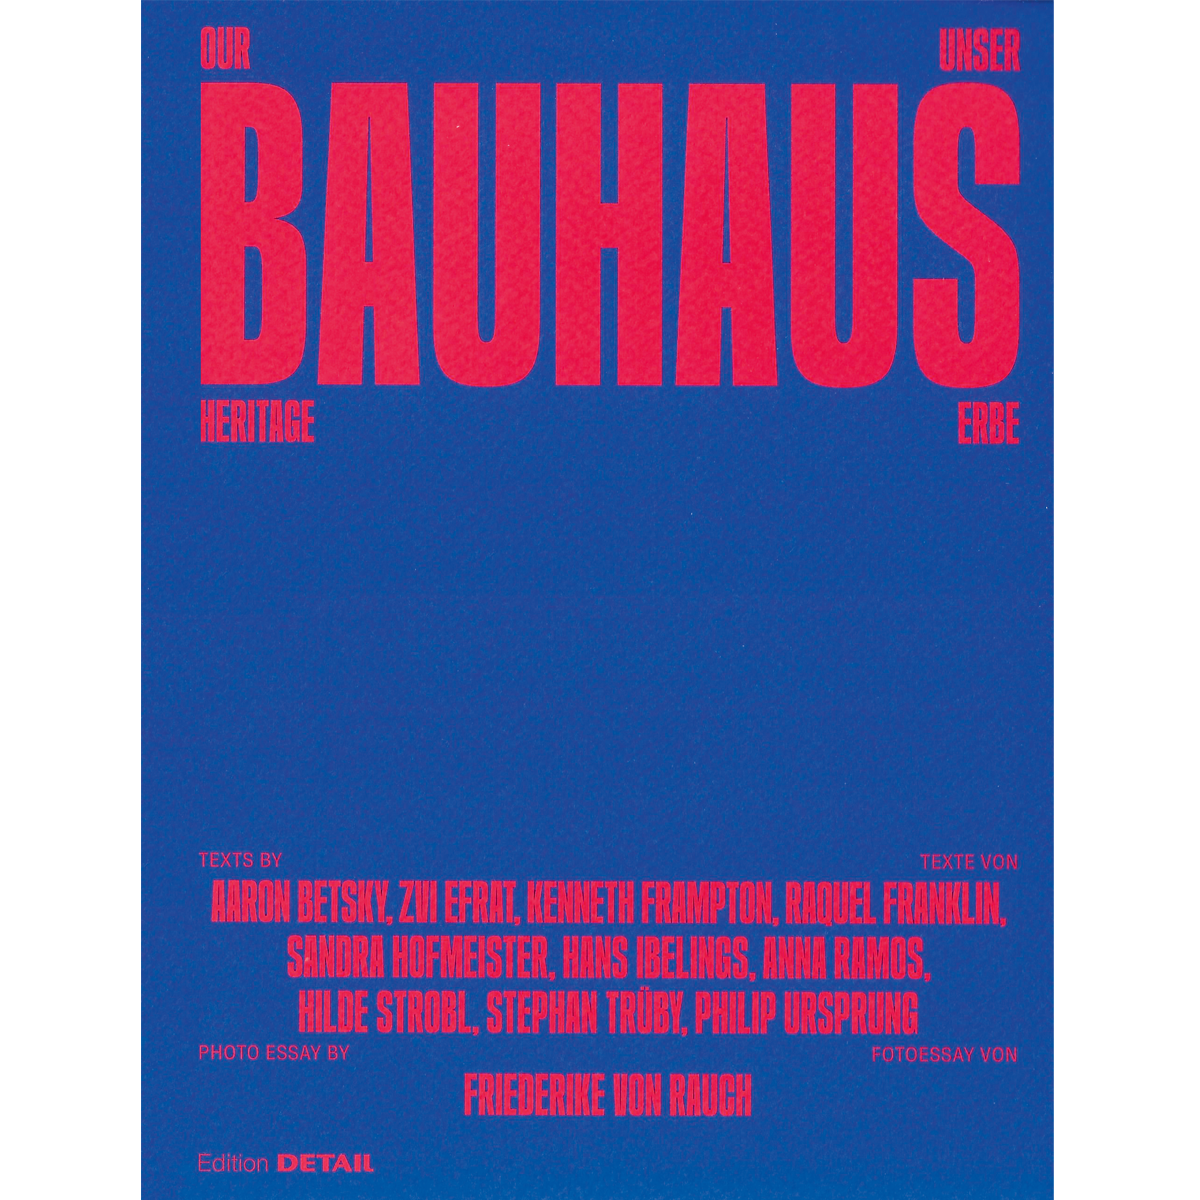 Our Bauhaus Heritage